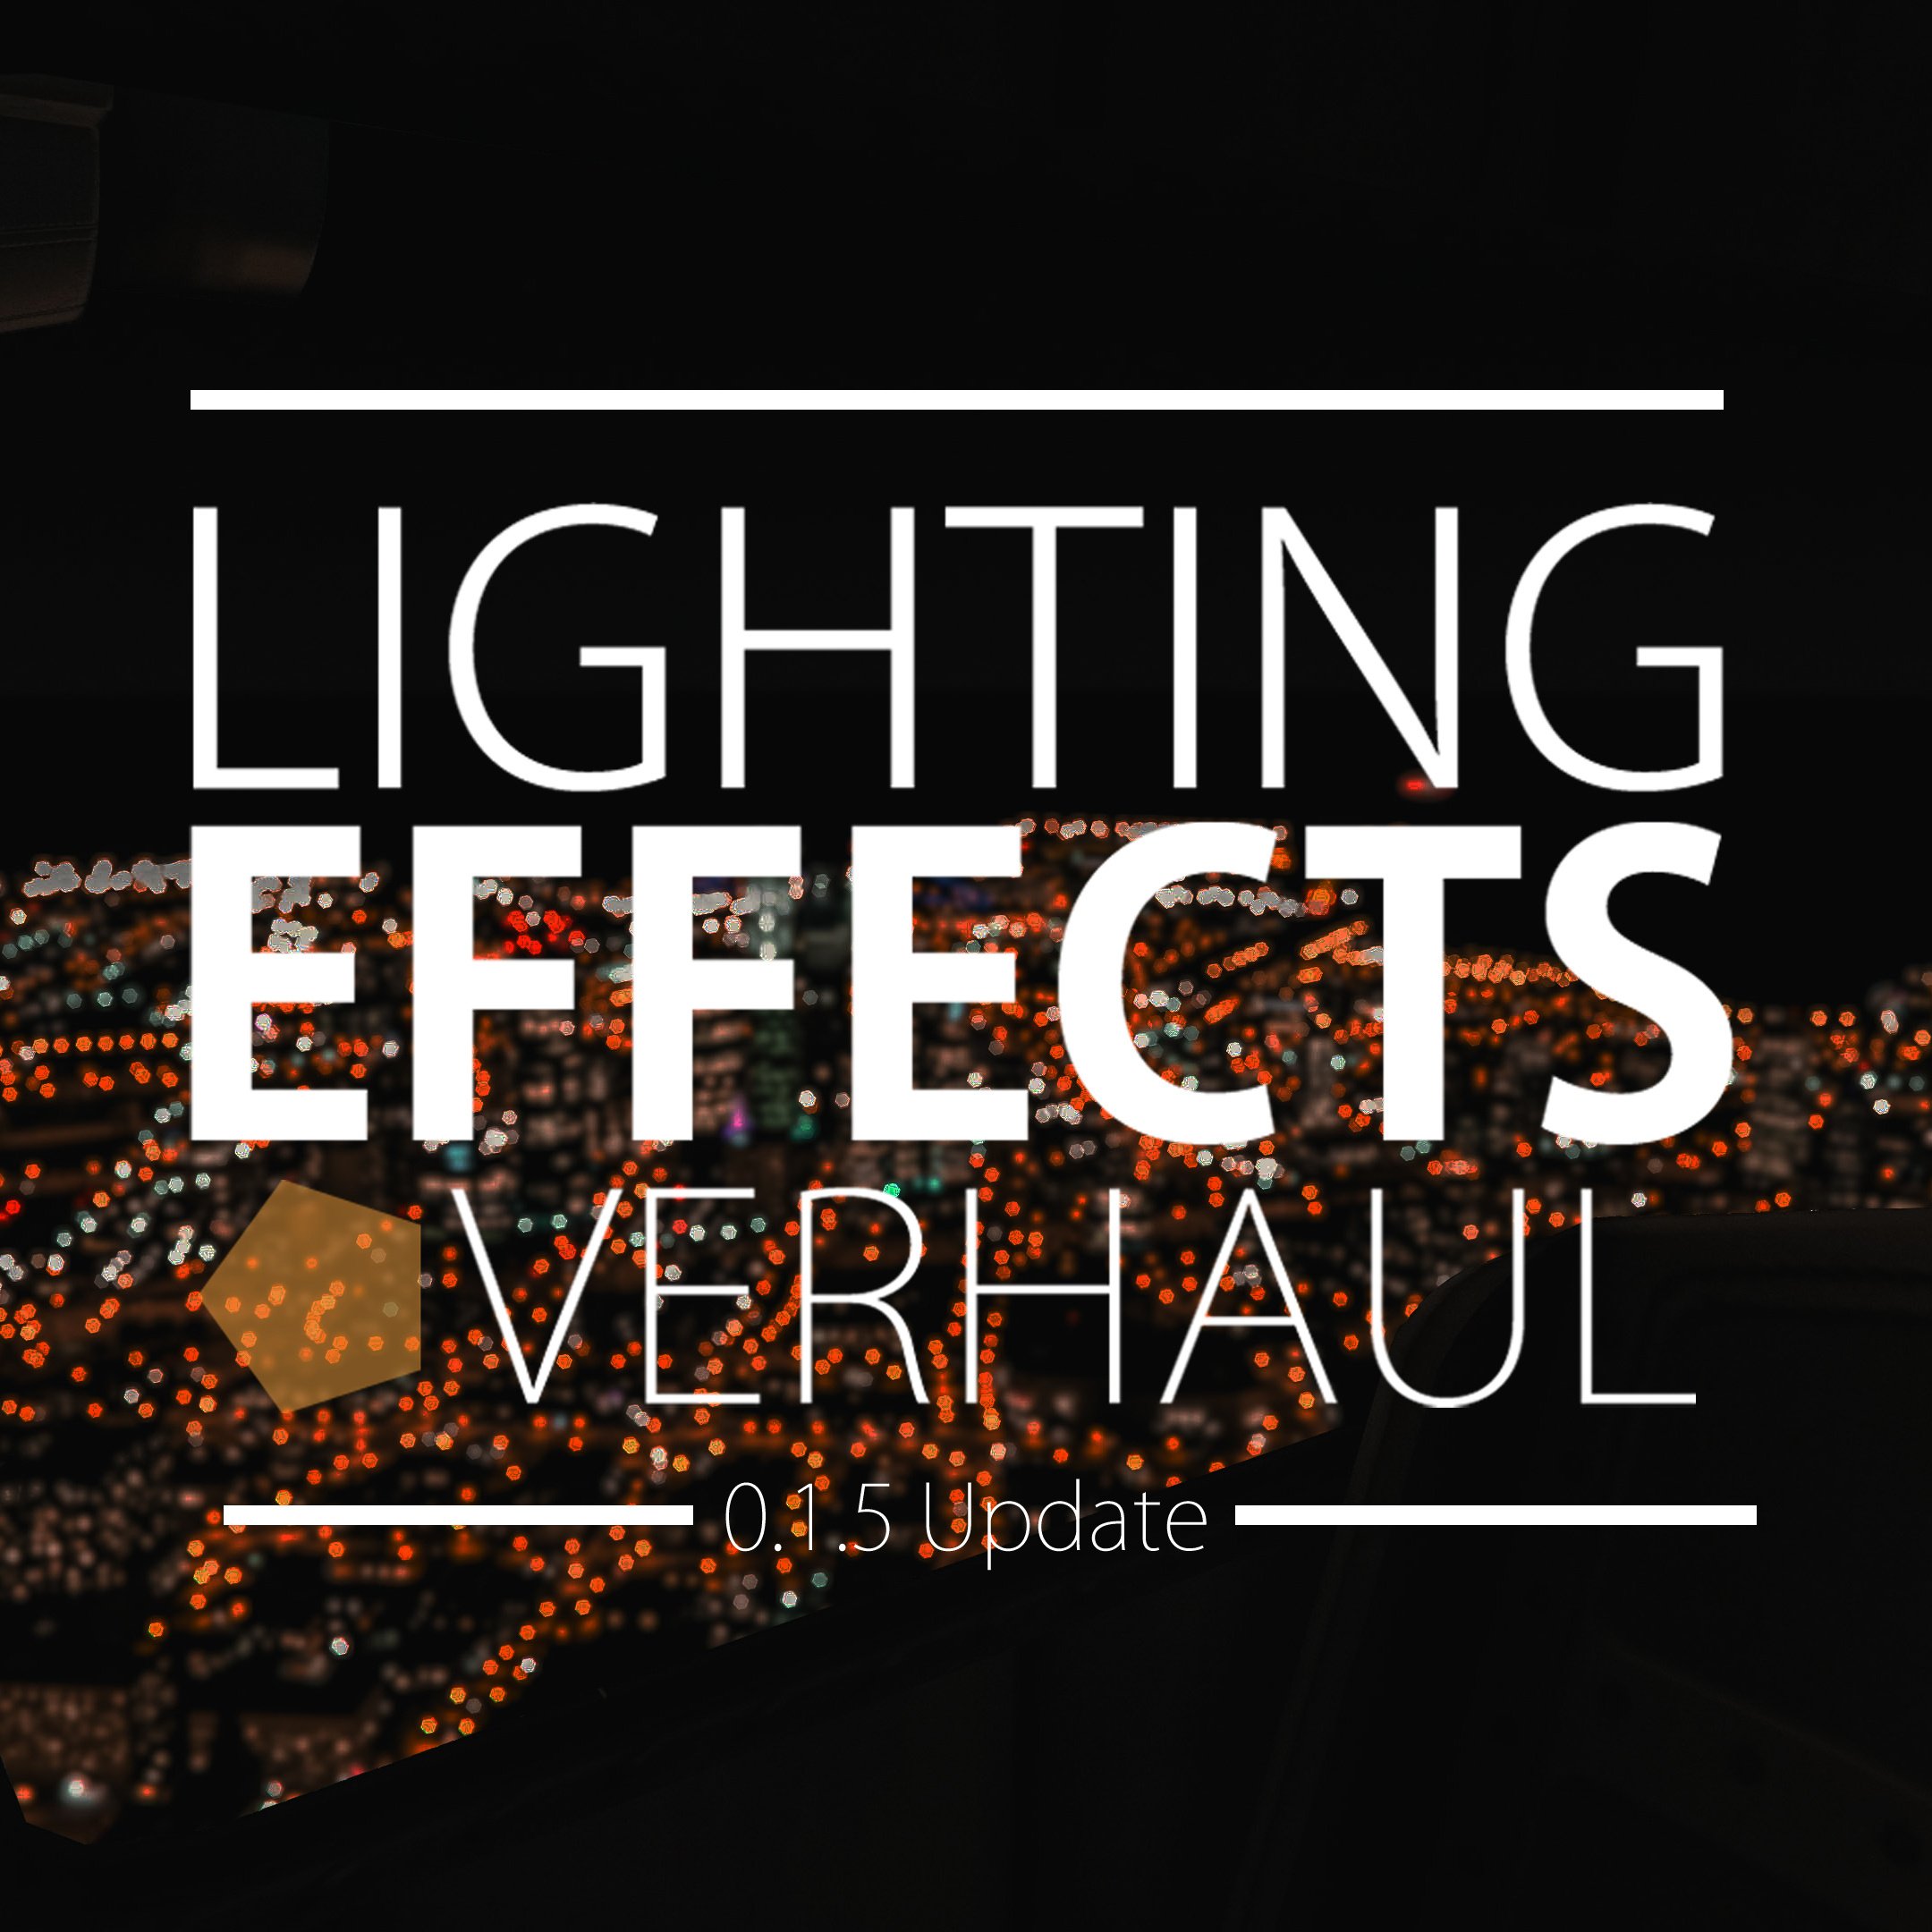 Gta 5 lighting effects overhaul